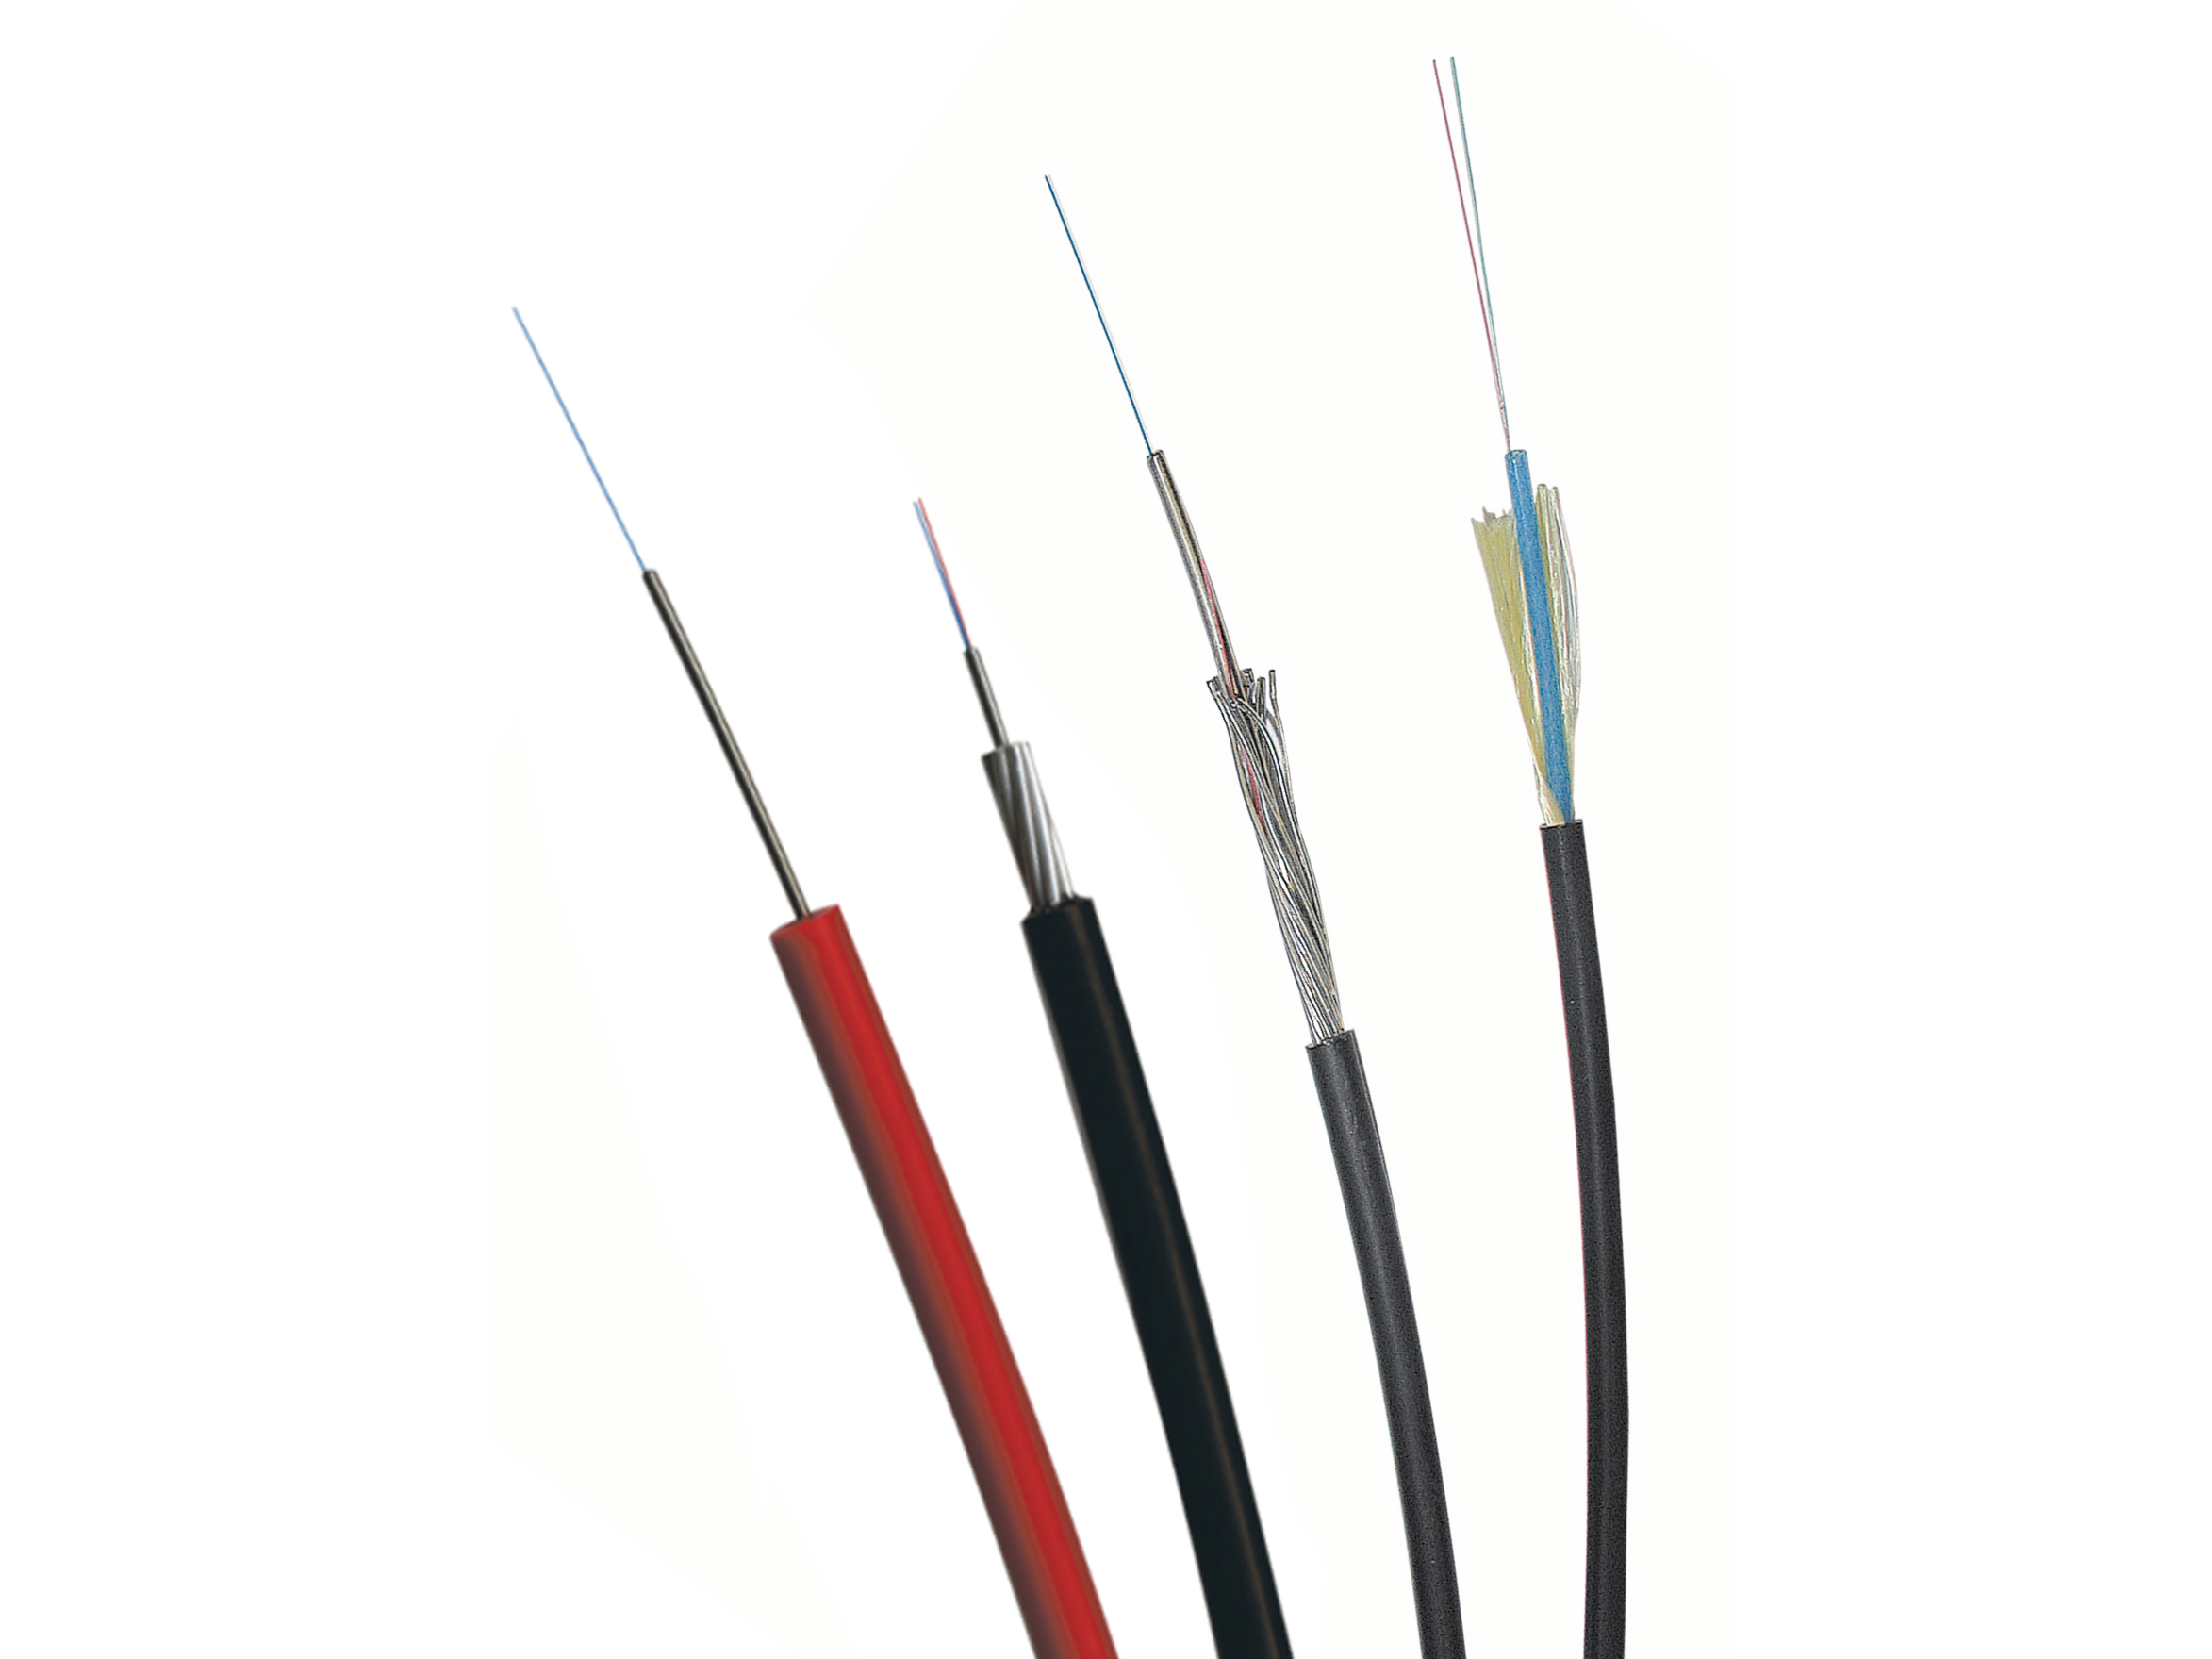 Linear heat detection sensor cables